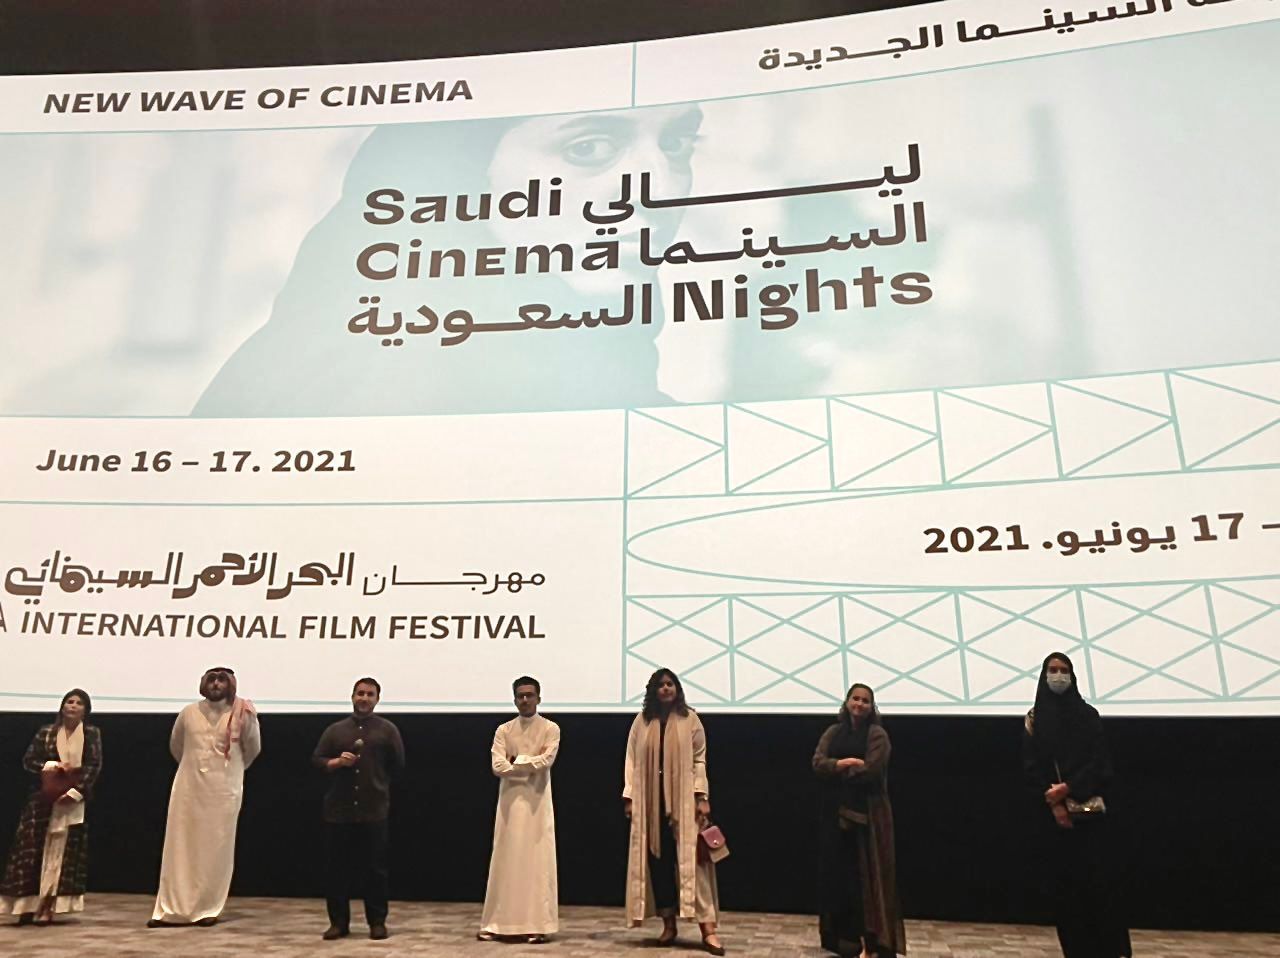 ليالي السينما السعودية في جدة  - twitter/redseafilm